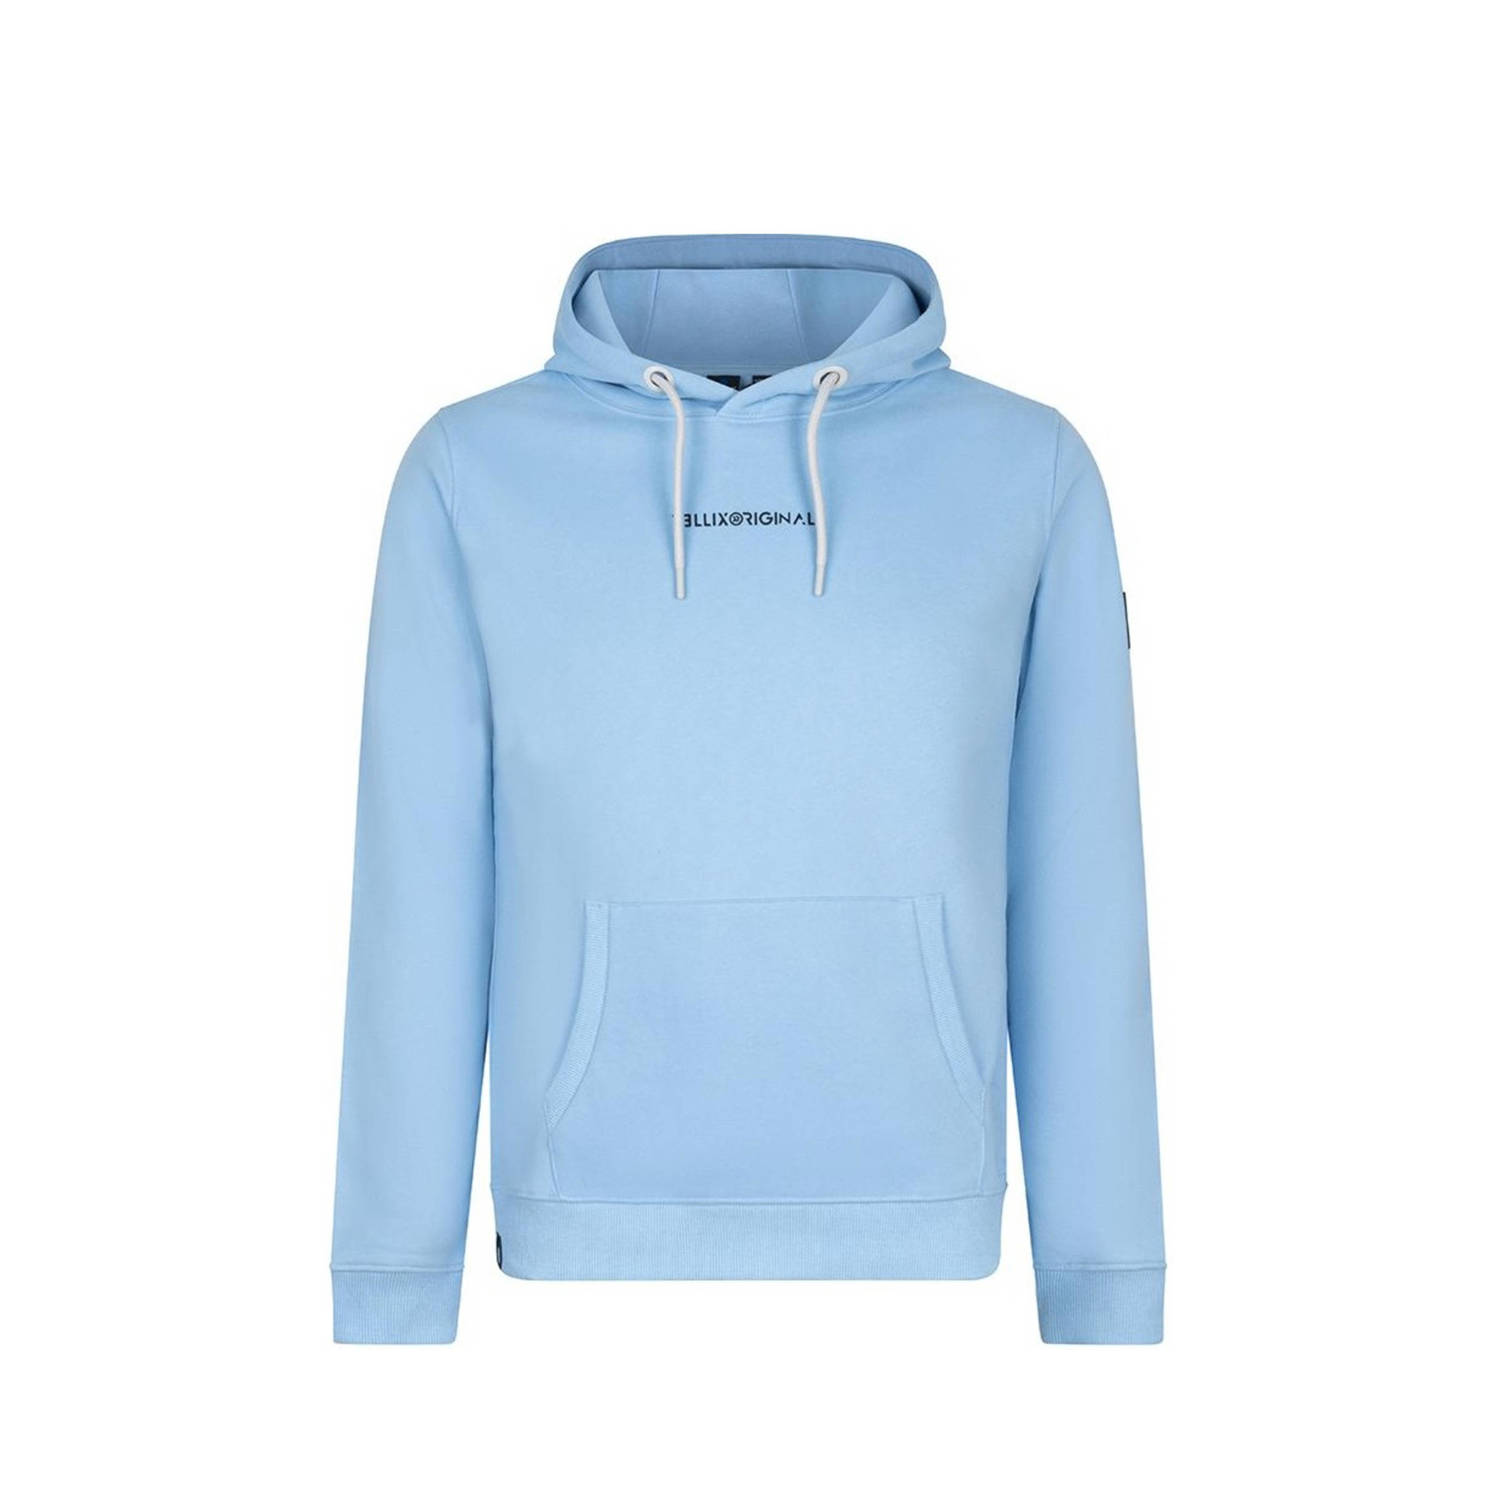 Rellix hoodie met backprint blauw